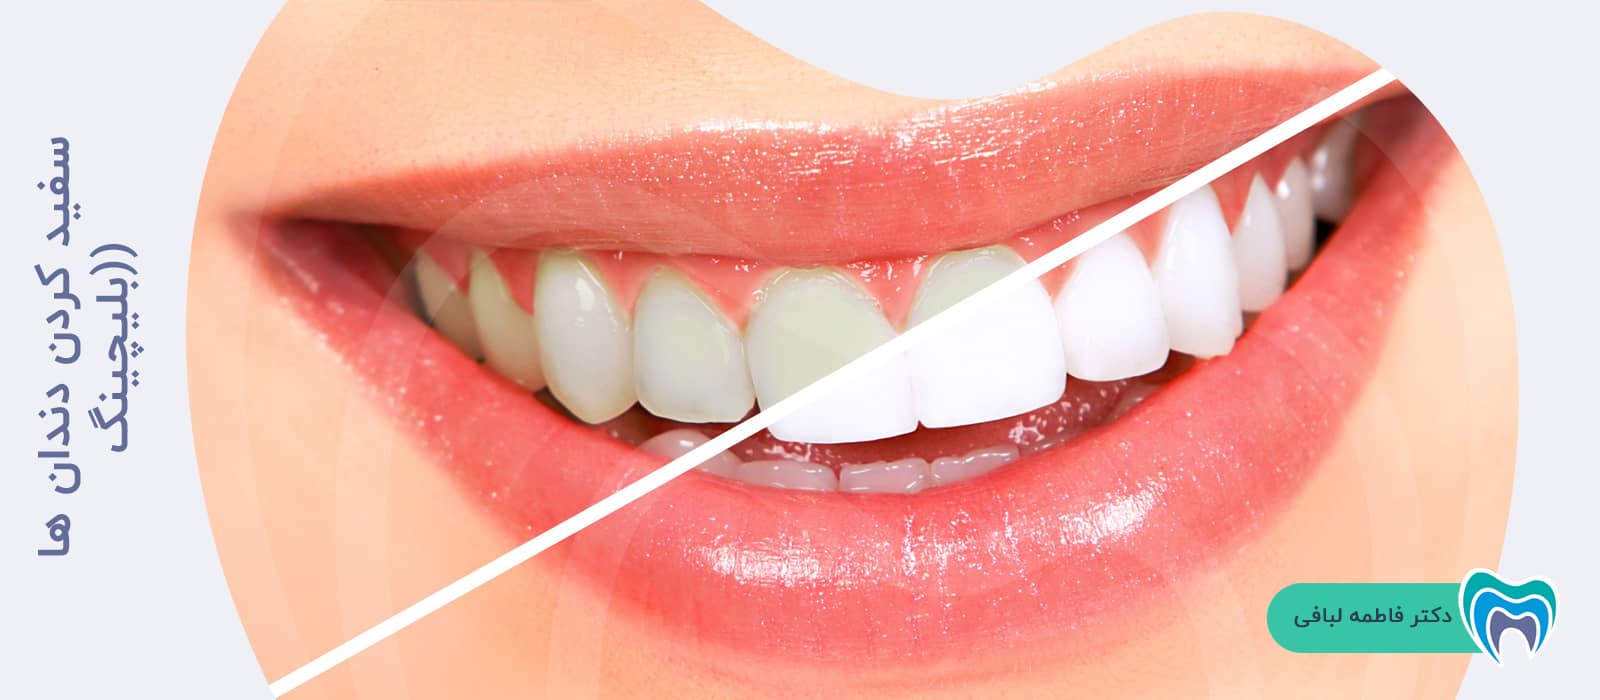 سفید کردن دندان ها (بلیچینگ)